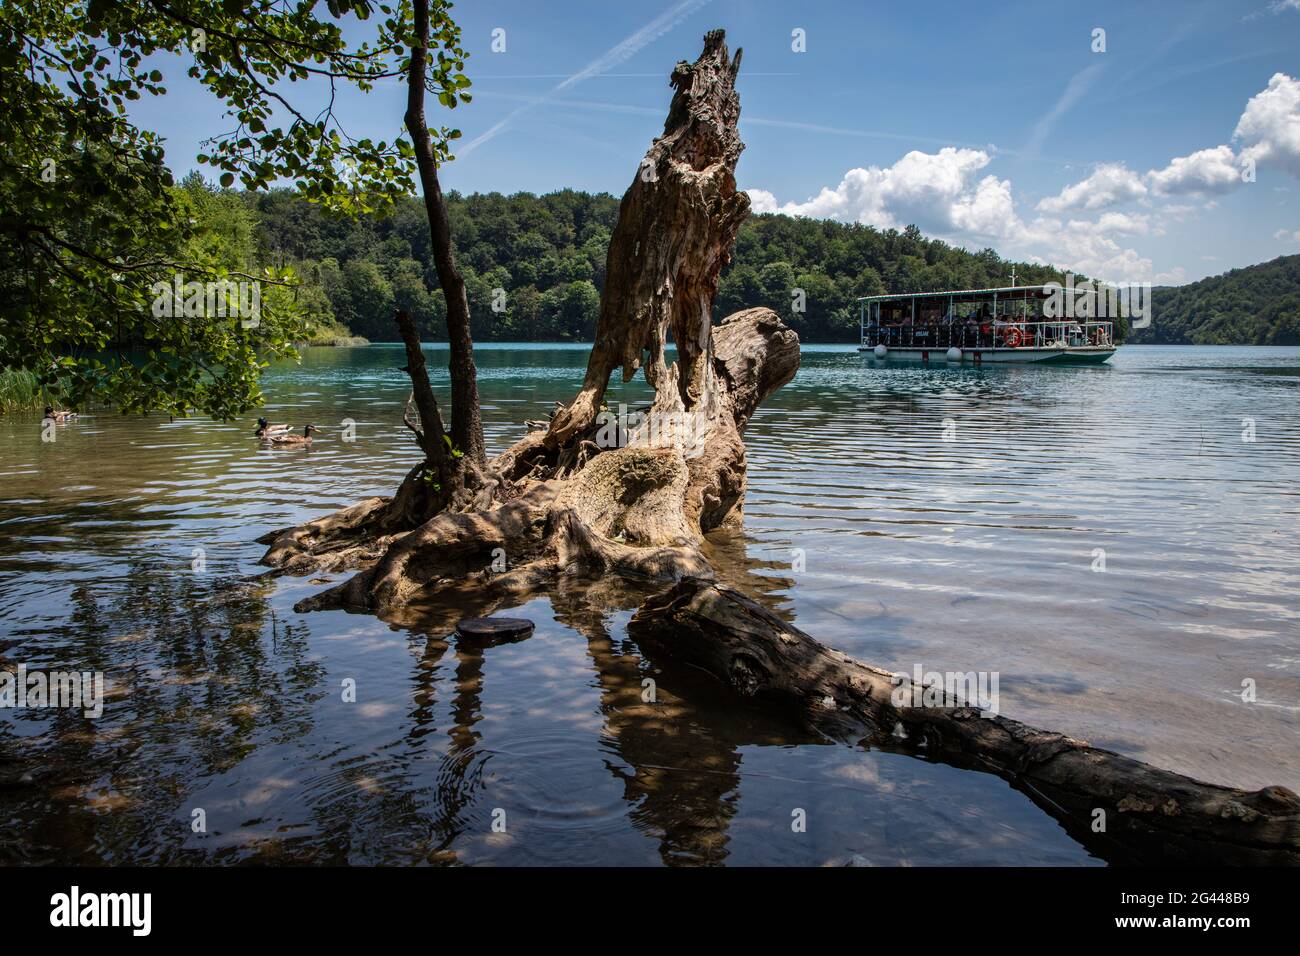 Tronco de árbol en el agua y barco de excursión con turistas, Parque Nacional de los Lagos de Plitvice, Lika-Senj, Croacia, Europa Foto de stock